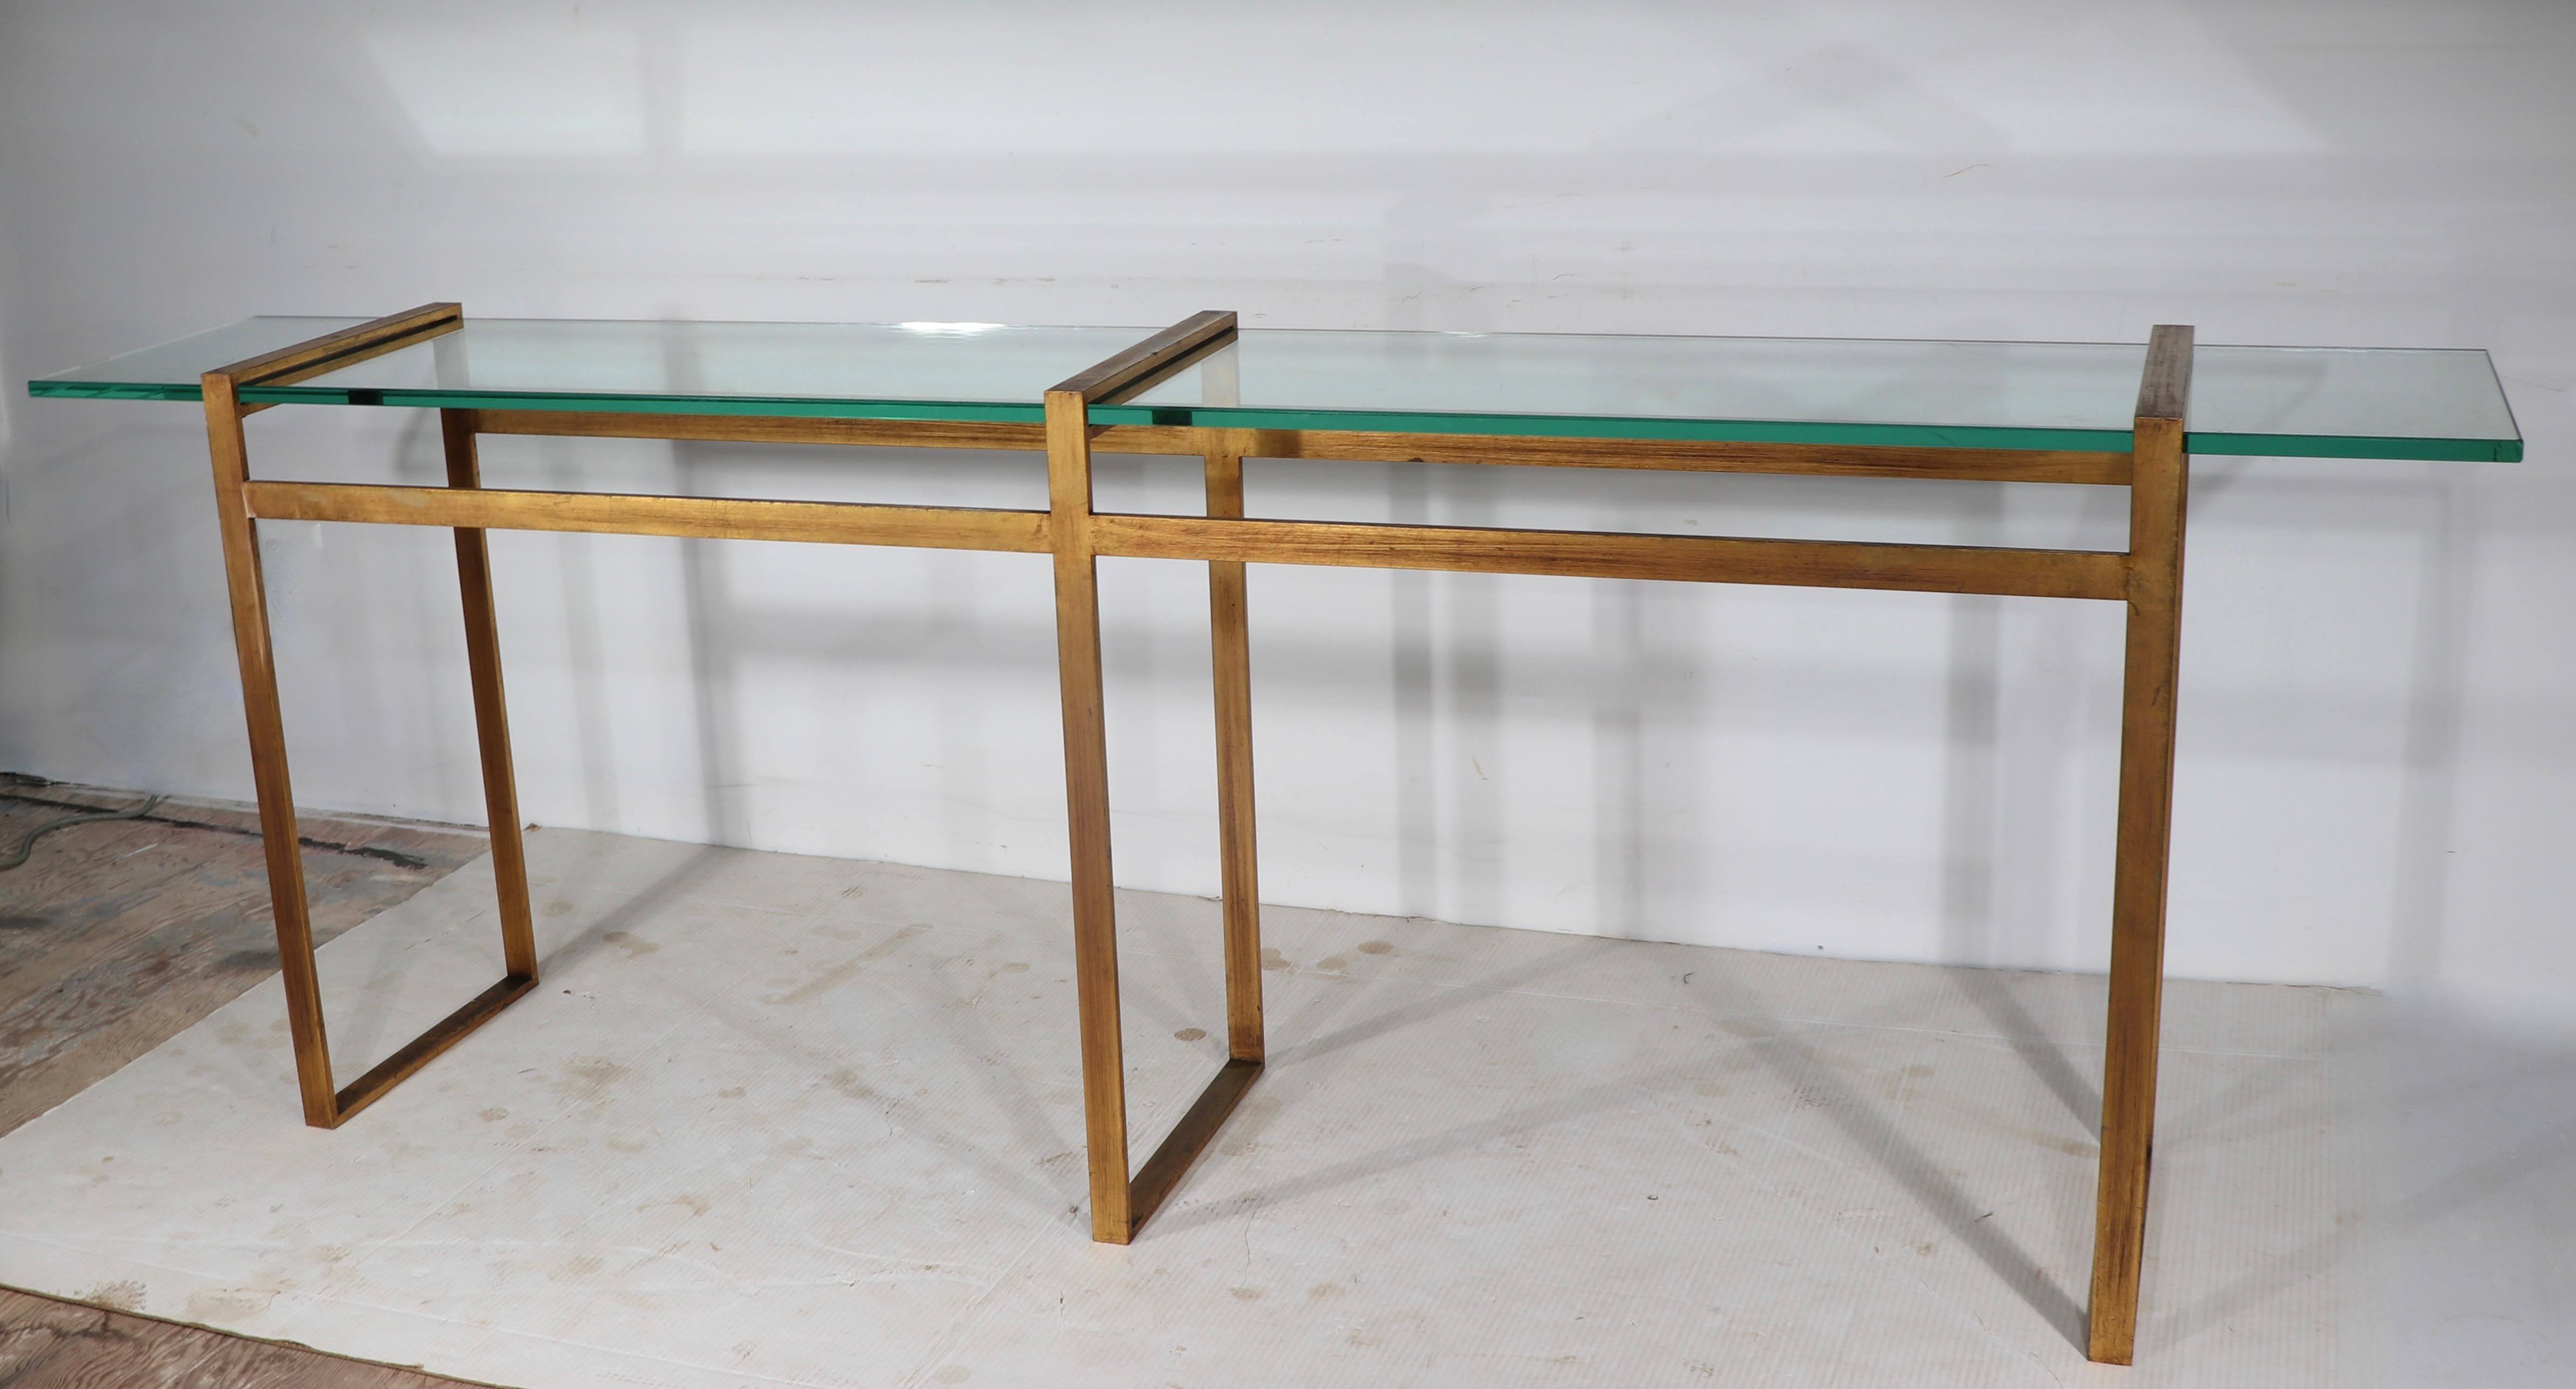 Voguish, raffiniert und schicke architektonische Konsole Tisch, mit einem quadratischen Metallrahmen in faux vergoldetem Finish, mit einem großen, dicken (.75 in) Glasboden. 
Die Konsole ist in einem sehr guten Originalzustand und weist nur leichte